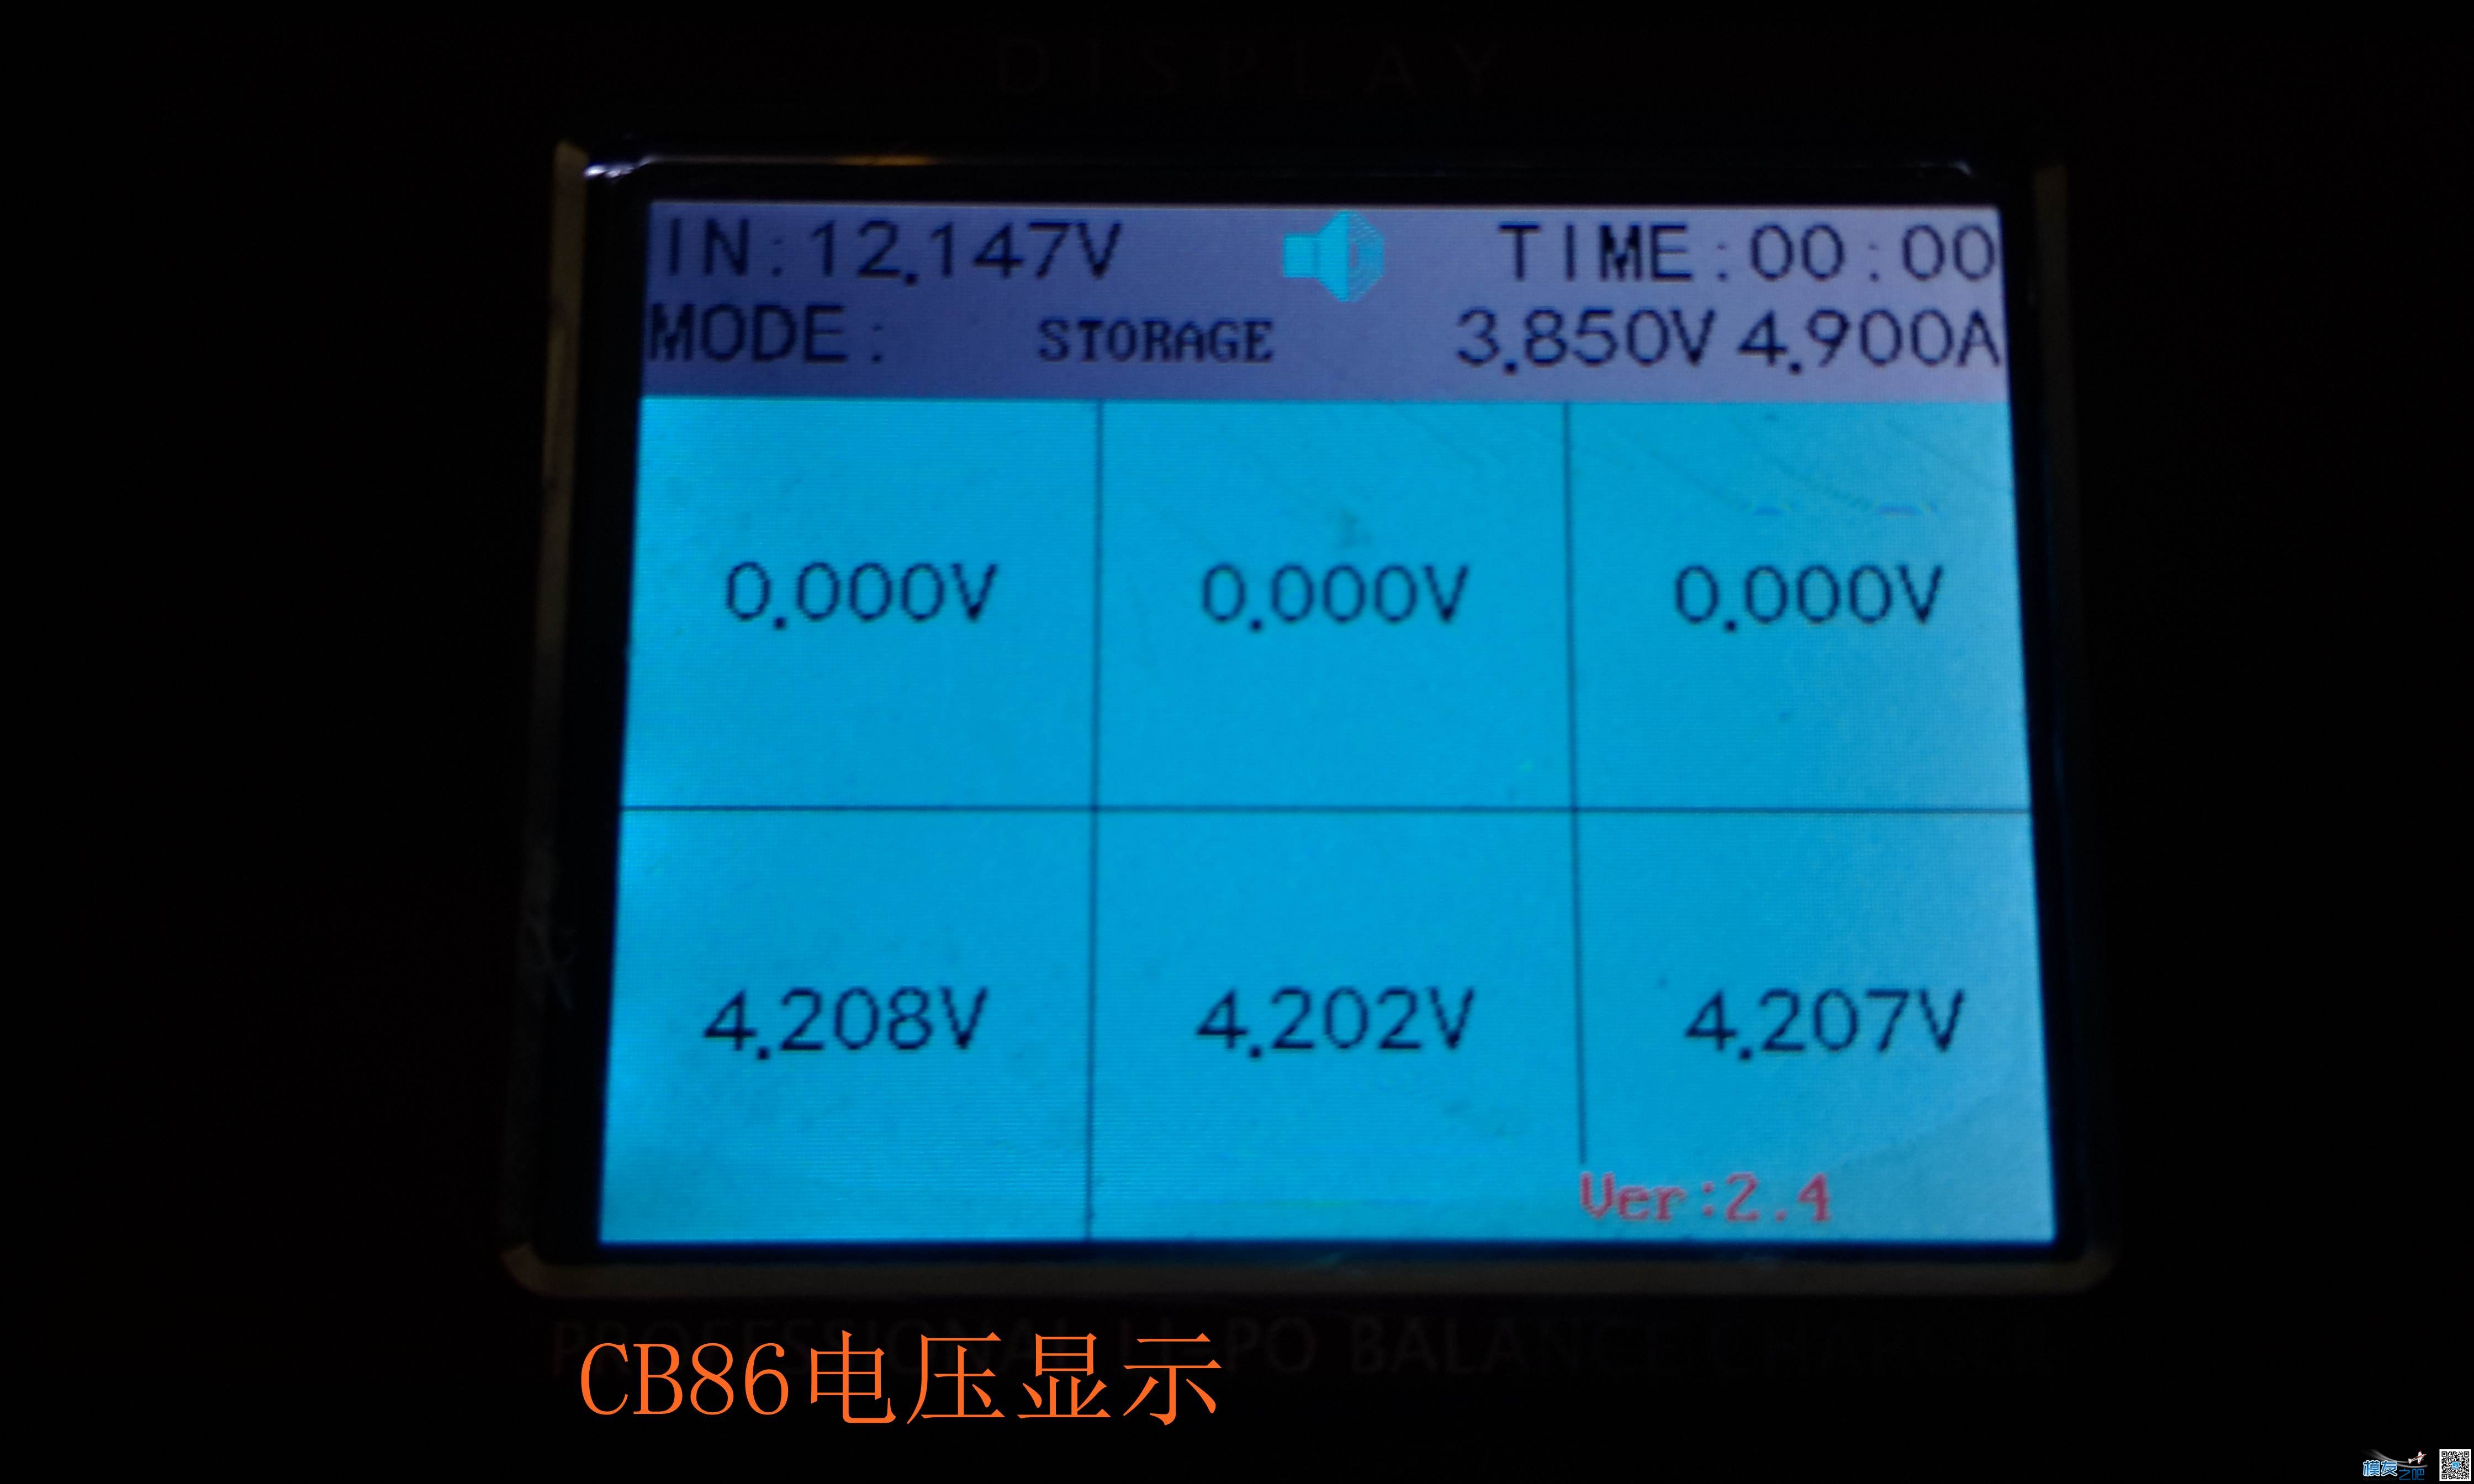 乐迪CP620开箱与CB86PLUS对比测试 电池,充电器,乐迪,固件,html 作者:455090630 6673 